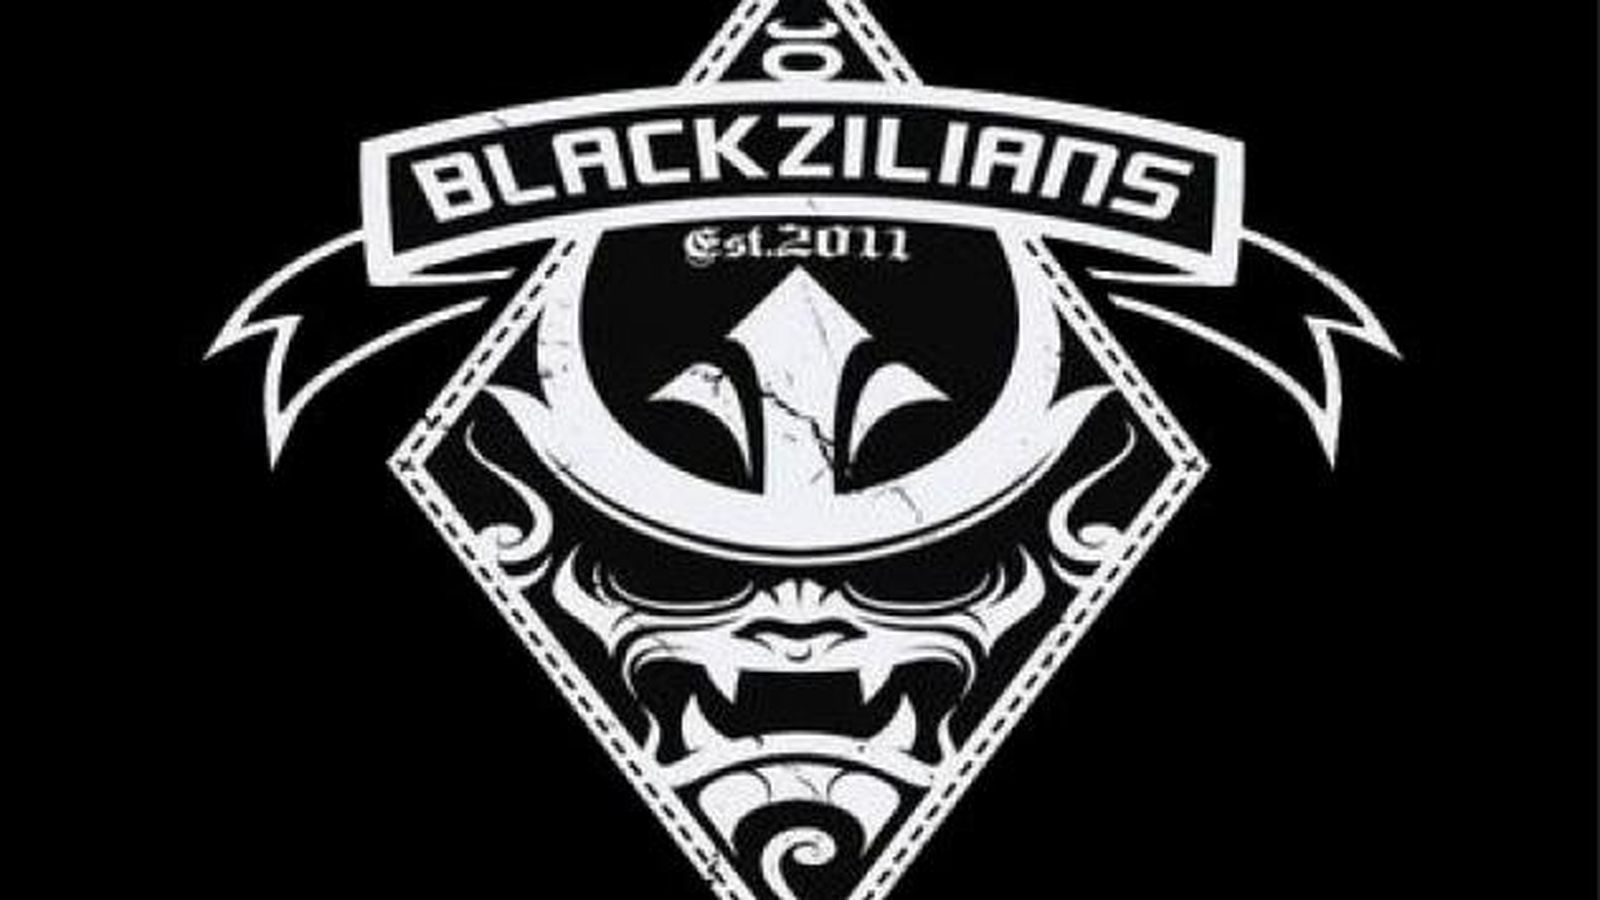 Blackzilians